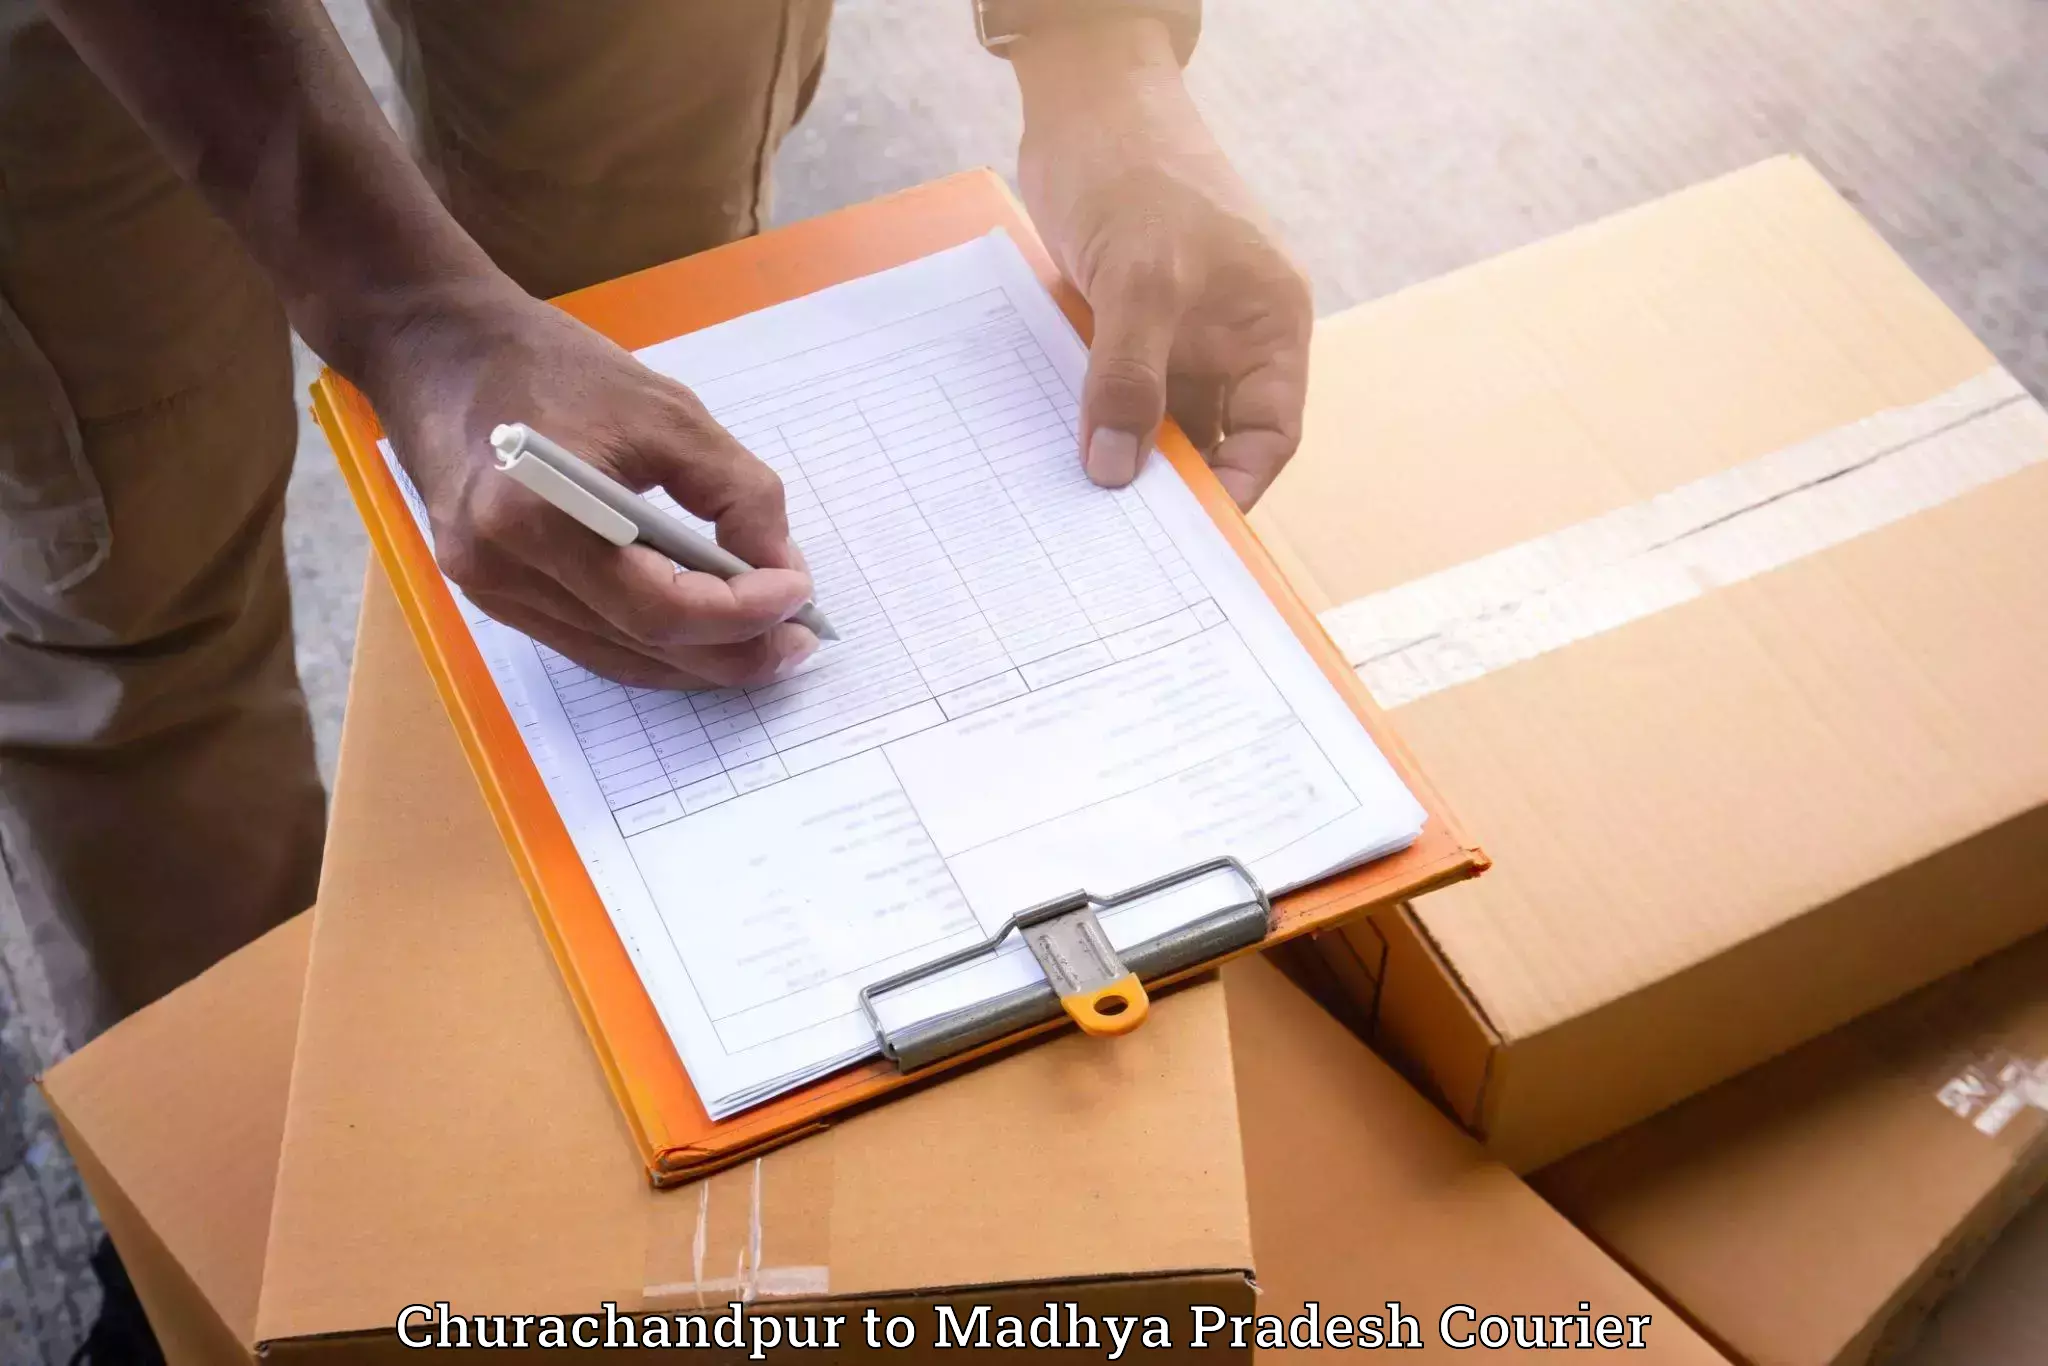 Furniture moving experts Churachandpur to Amarpatan